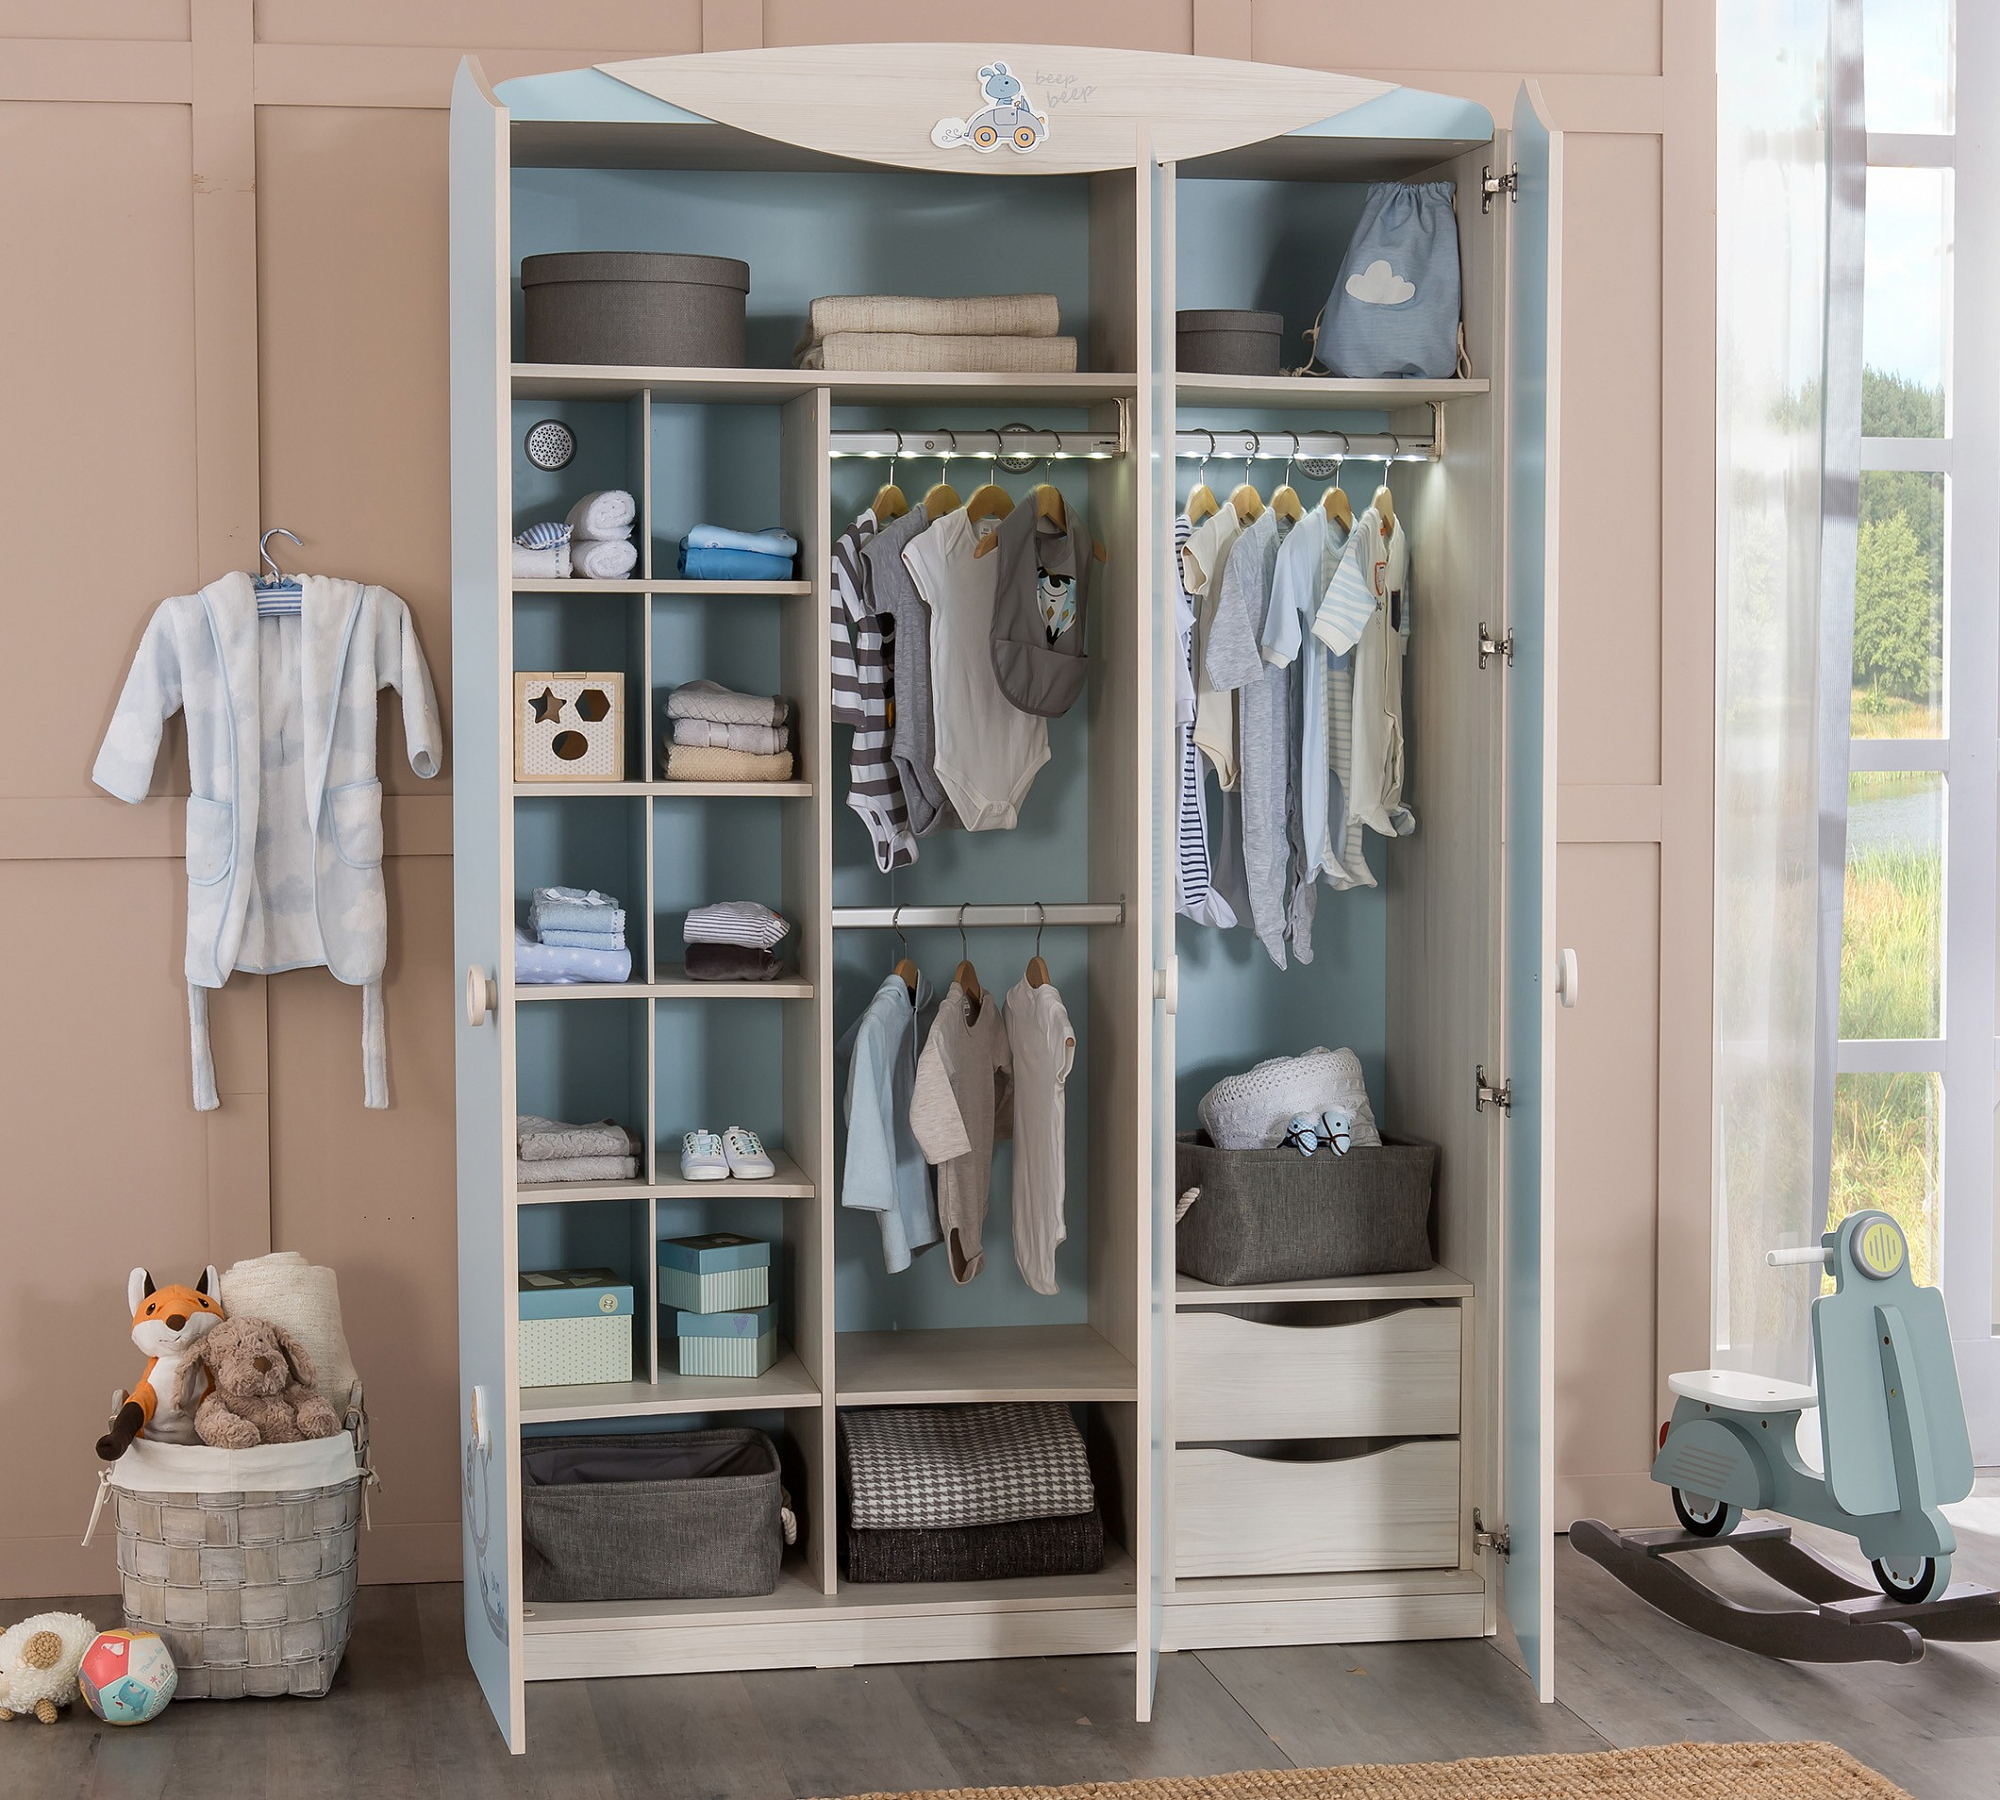 шкаф детский для одежды для двоих детей